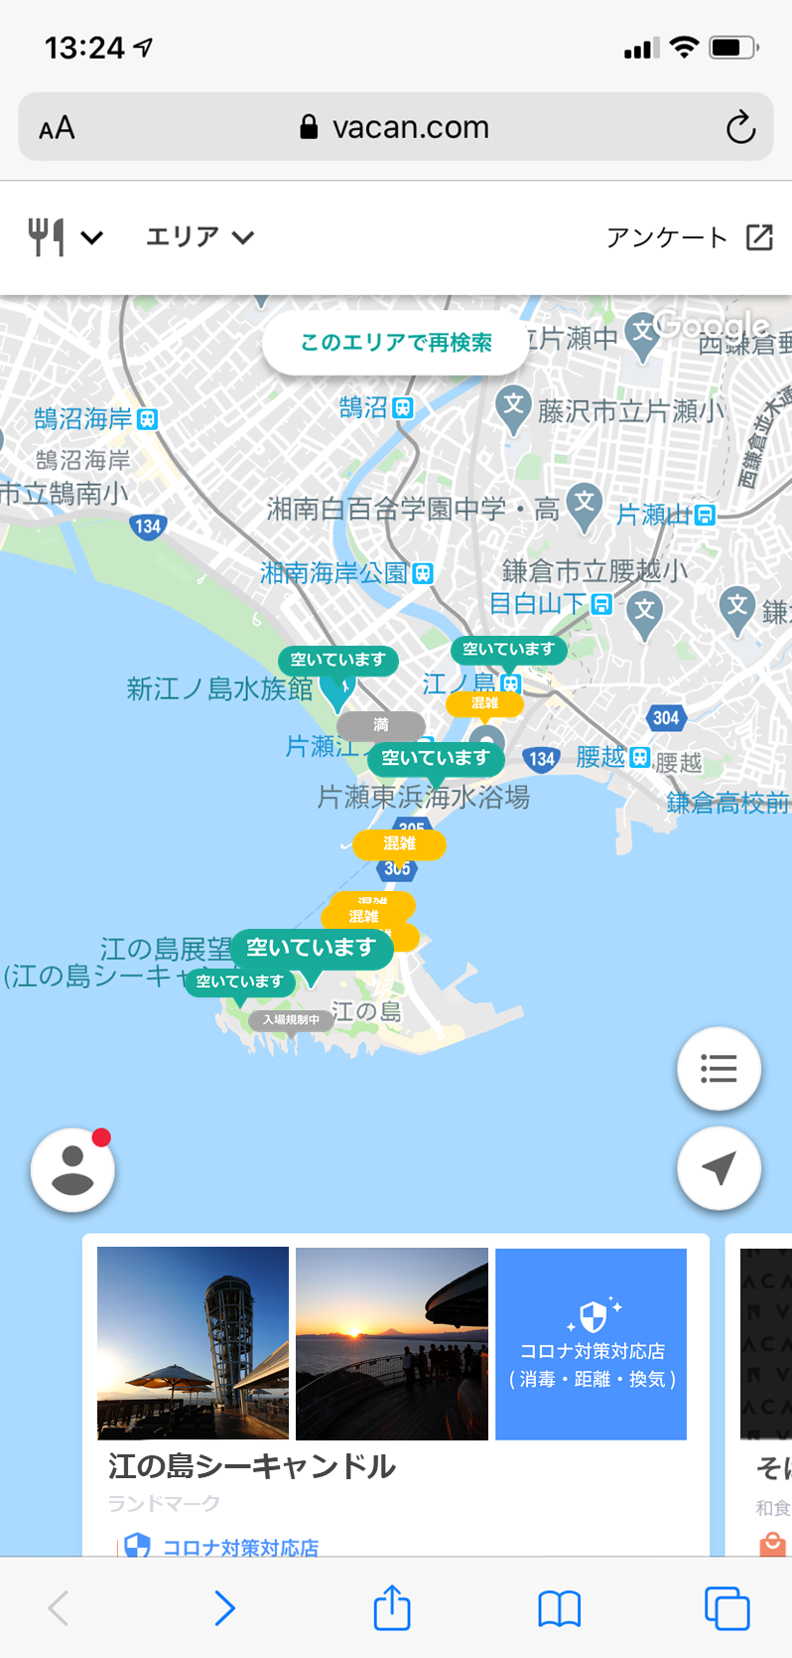 江の島周辺の混雑状況がリアルタイムで分かる Eno Map の実施について 江ノ島電鉄株式会社